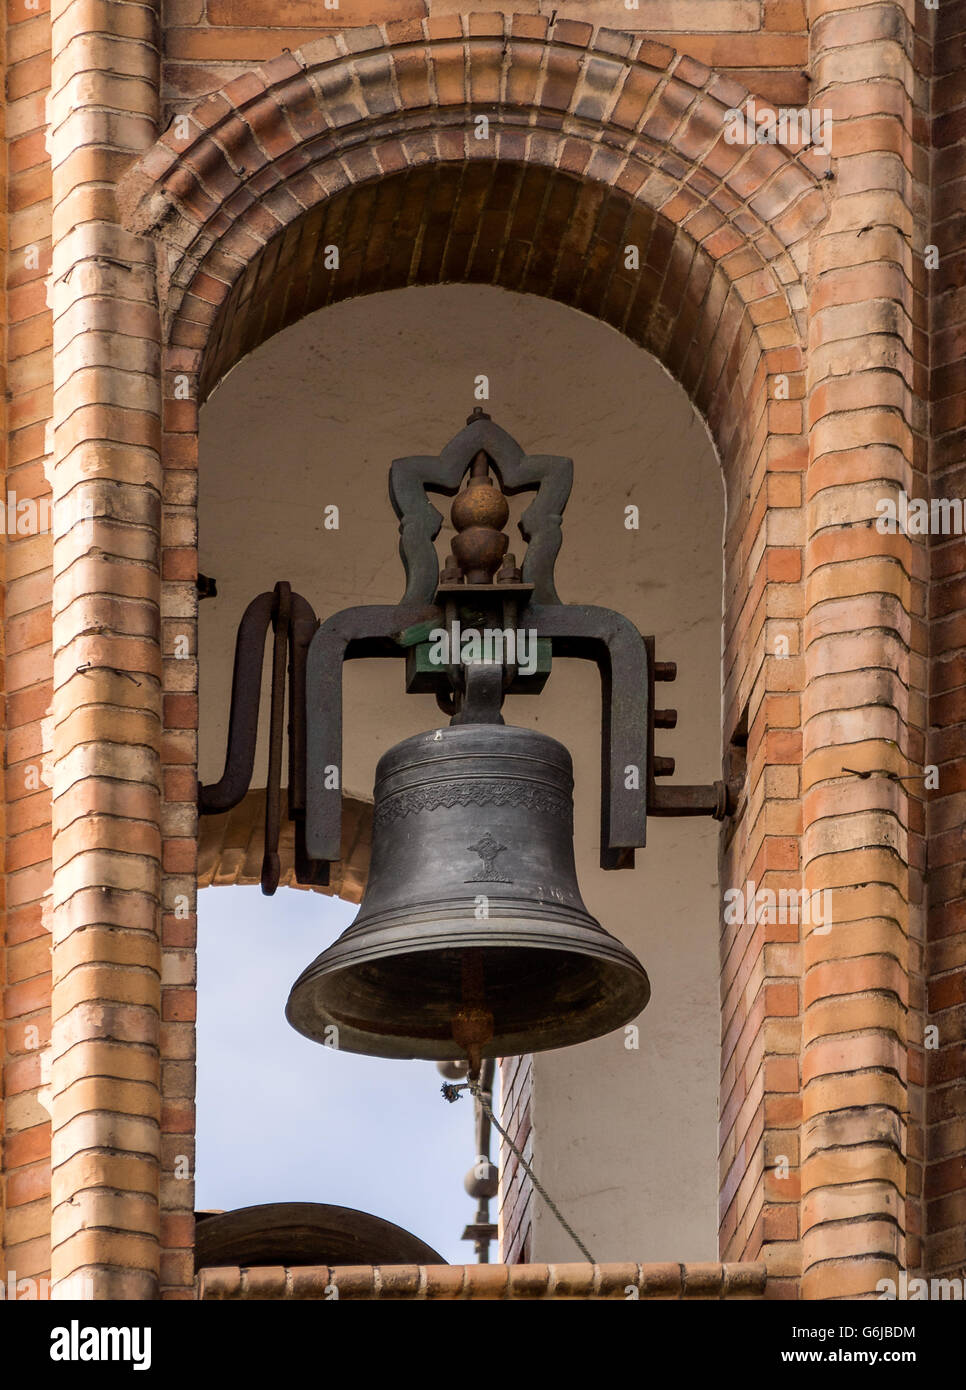 SIVIGLIA, SPAGNA - 15 MARZO 2016: La campana nella chiesa moresca di El Carmen Foto Stock